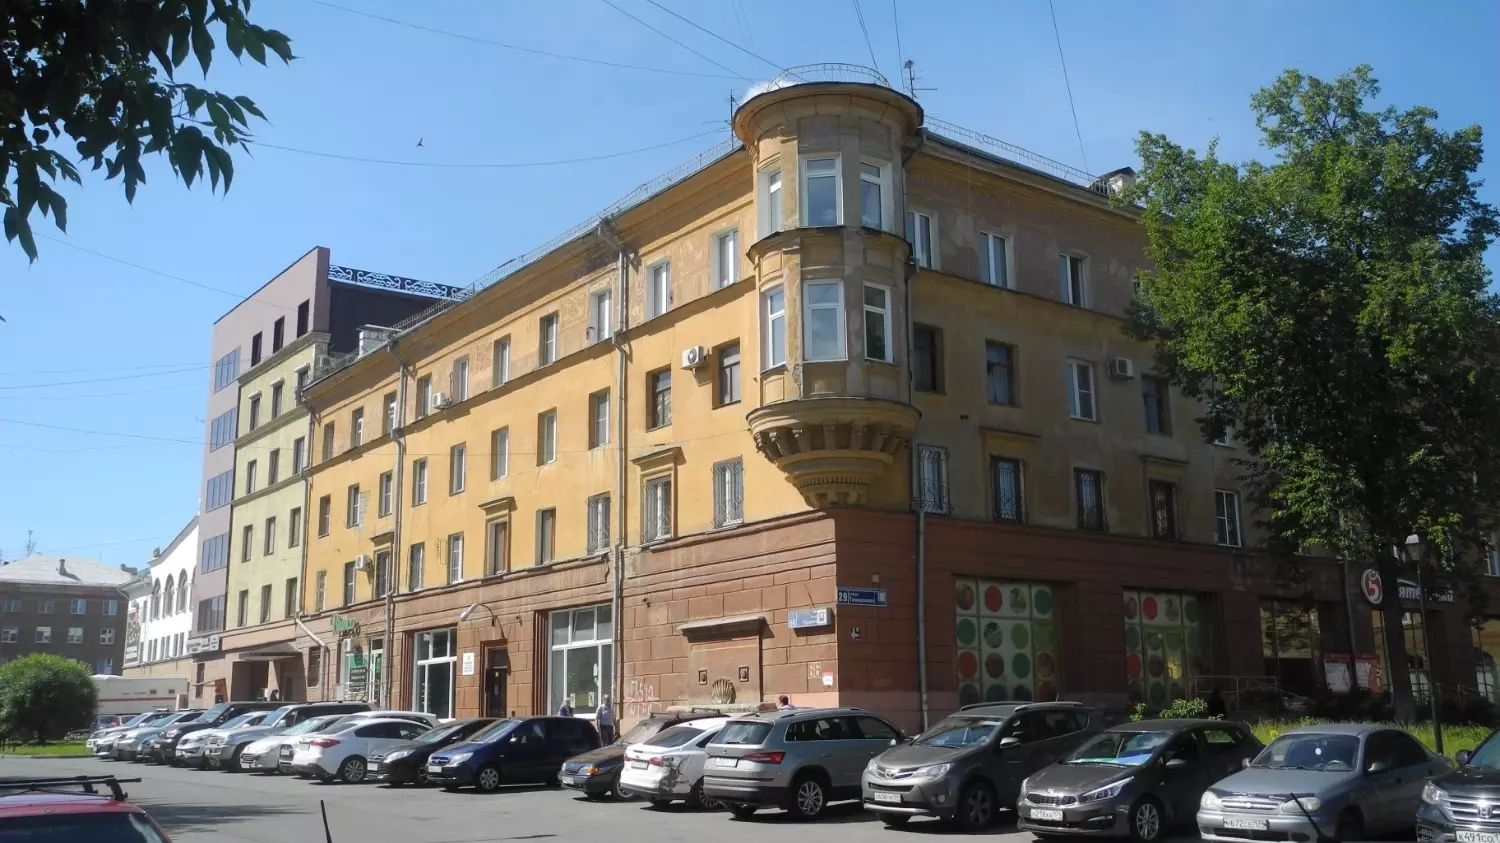 Дом на ул. Тимирязева, 29. Построен в стиле неоклассицизма с элементами барокко